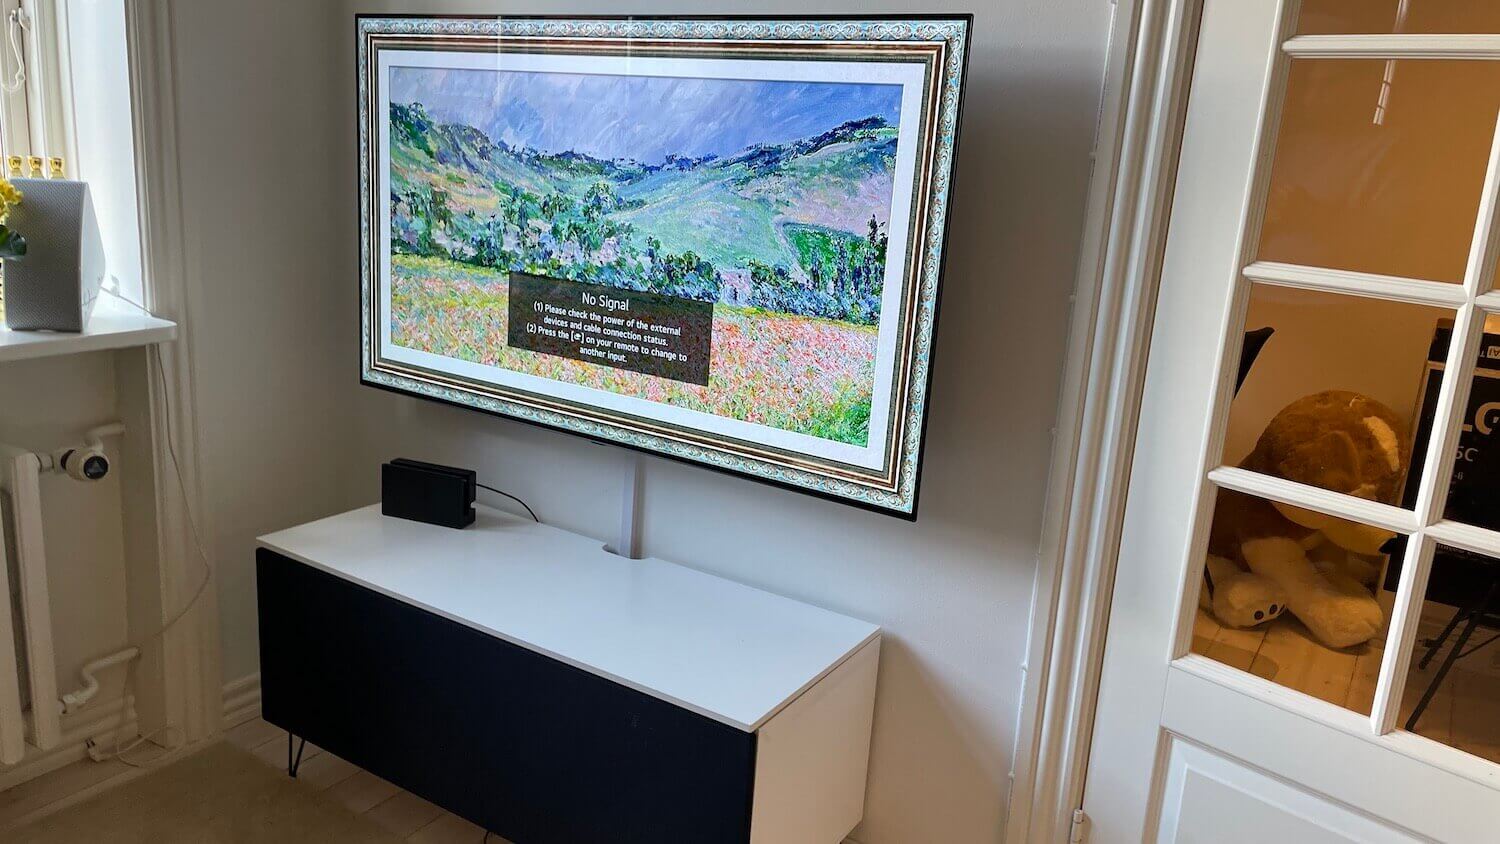 Væg-montering af 55 LG OLED TV på et vægbeslag med drejefunktion